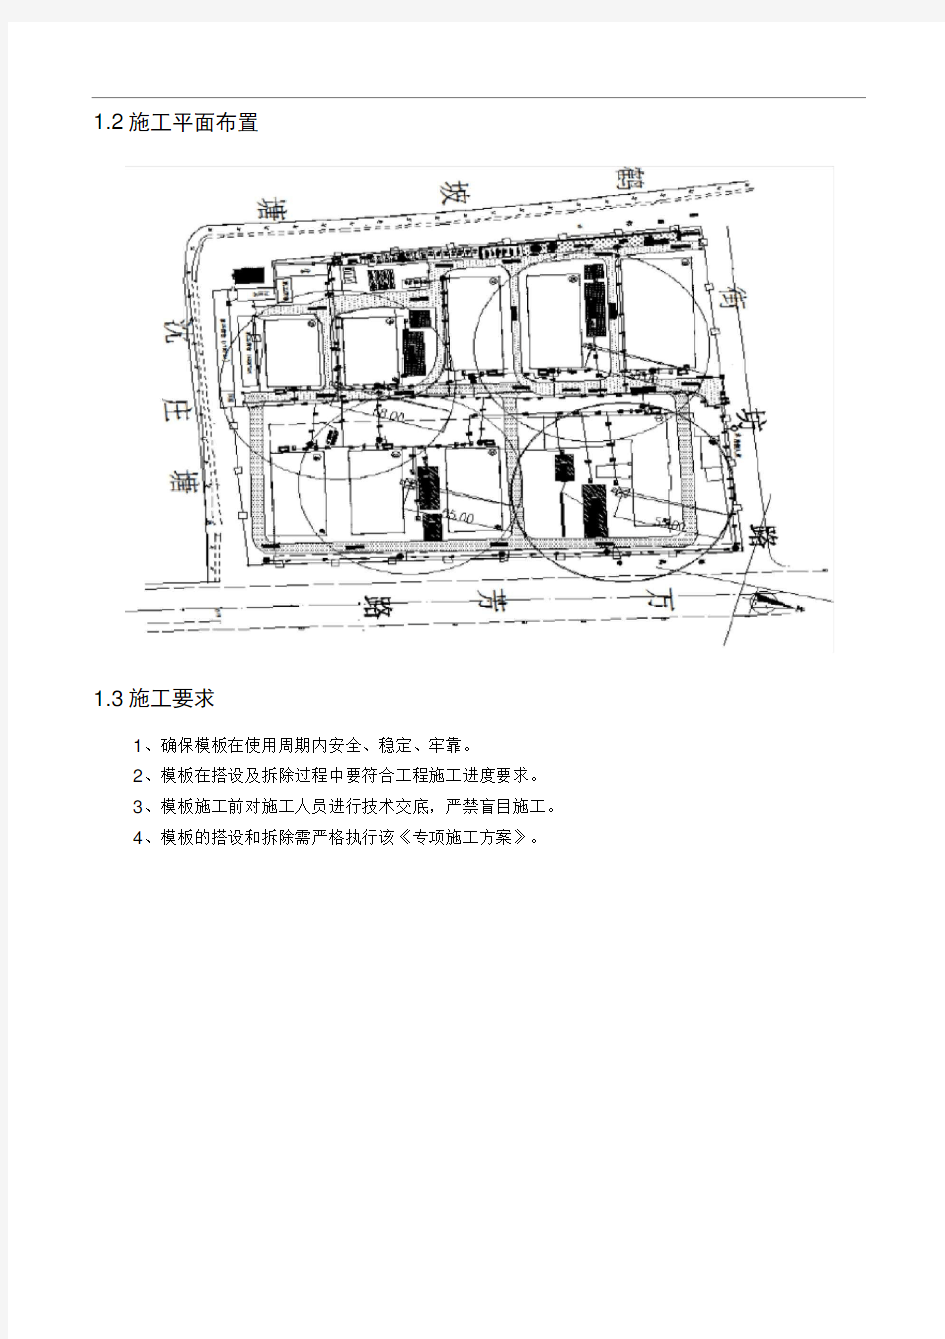 上海国家民用航天产业基地卫星应用产业化模板专项工程施工设计方案